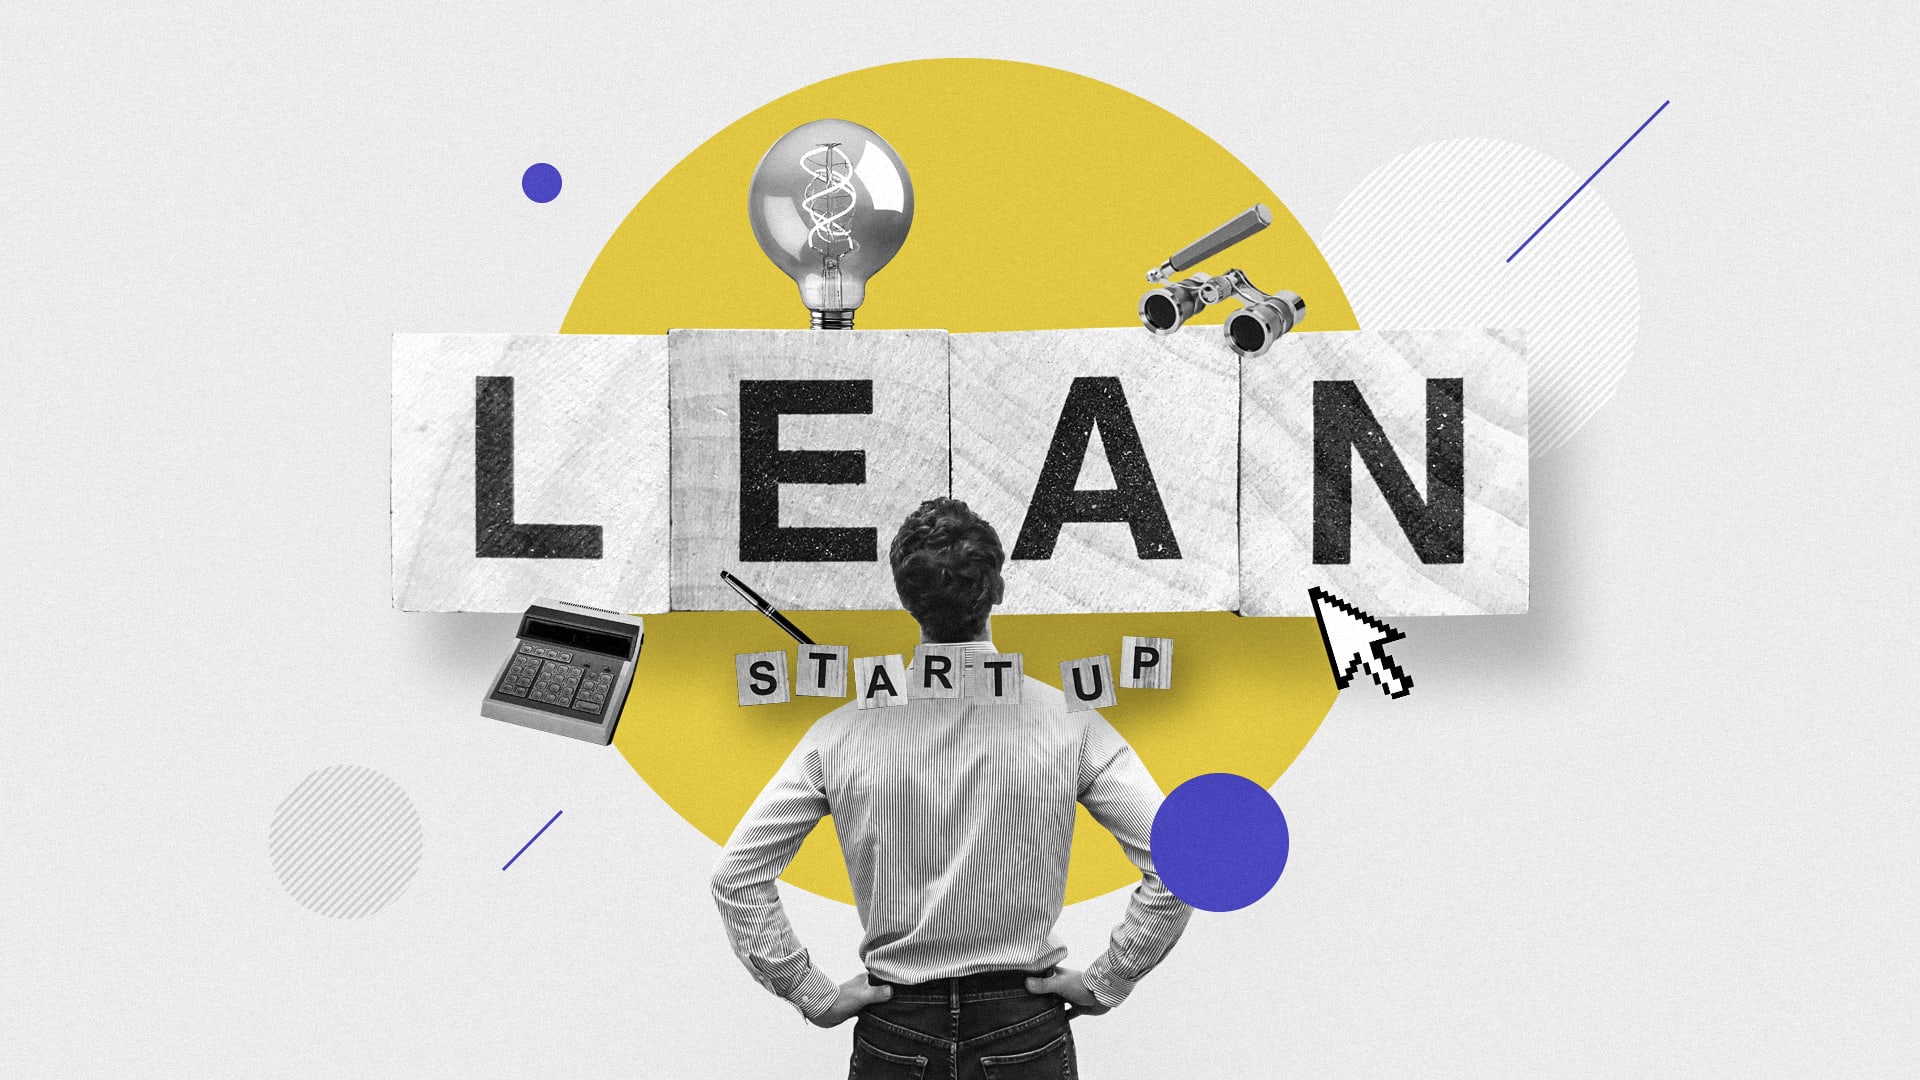 آیا استارتاپ ناب (Lean Start-up) مرده است؟